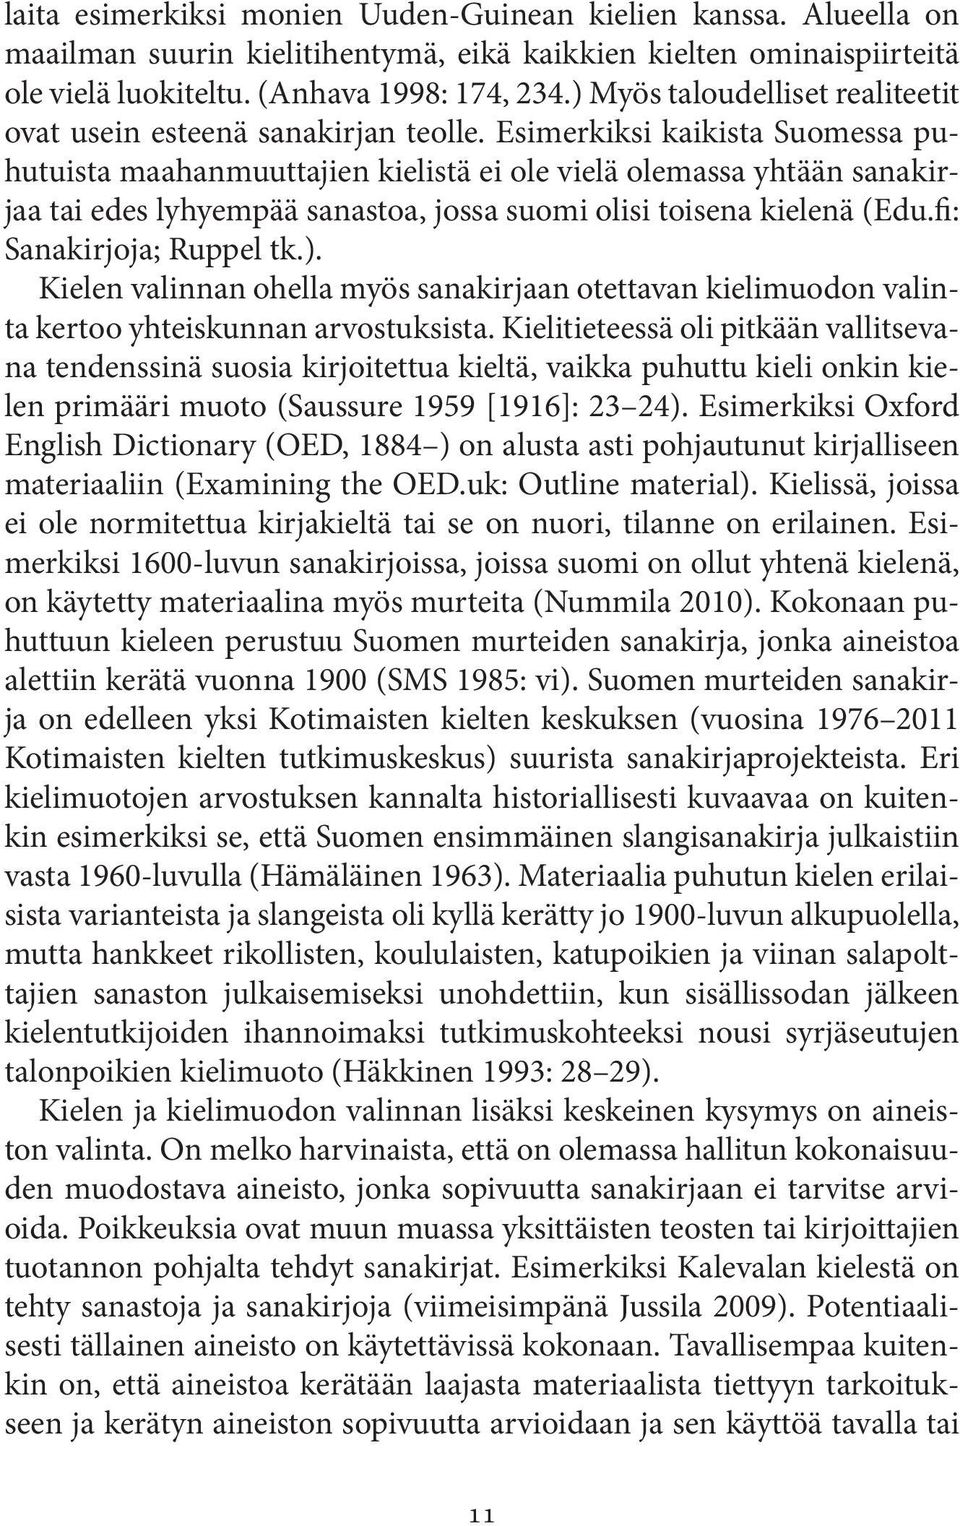 Esimerkiksi kaikista Suomessa puhutuista maahanmuuttajien kielistä ei ole vielä olemassa yhtään sanakirjaa tai edes lyhyempää sanastoa, jossa suomi olisi toisena kielenä (Edu.